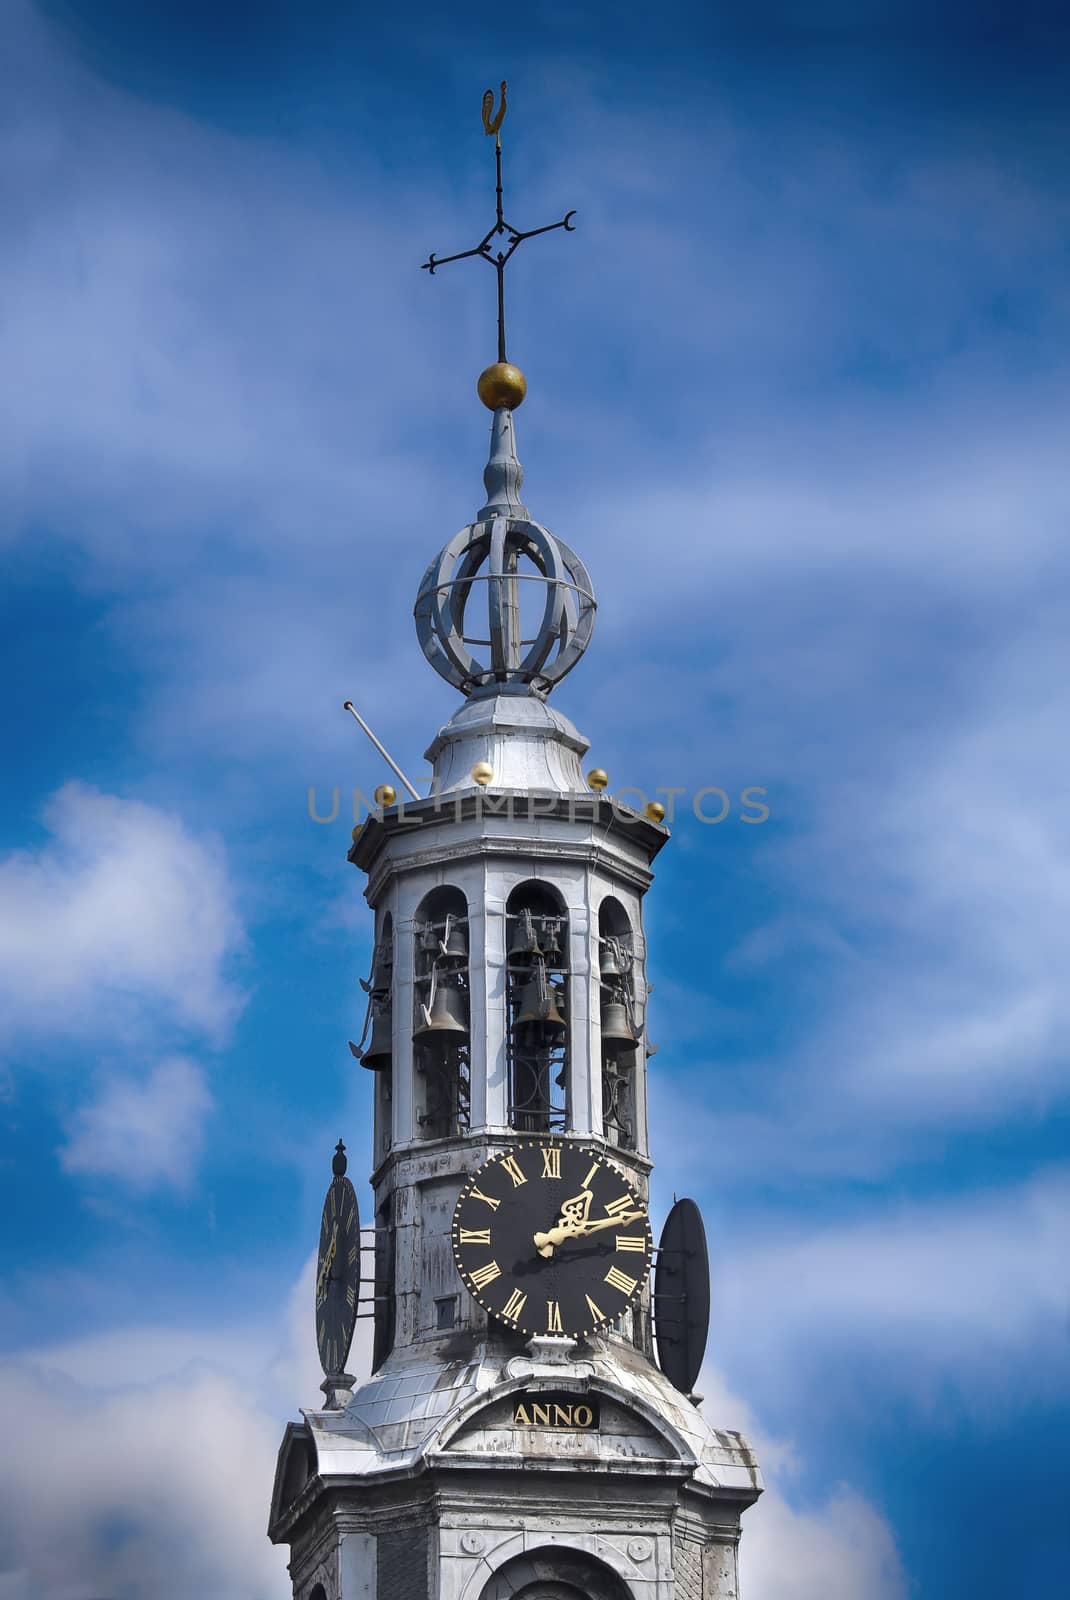 The Munttoren on Muntplein square in Amsterdam, The Netherlands by vladacanon